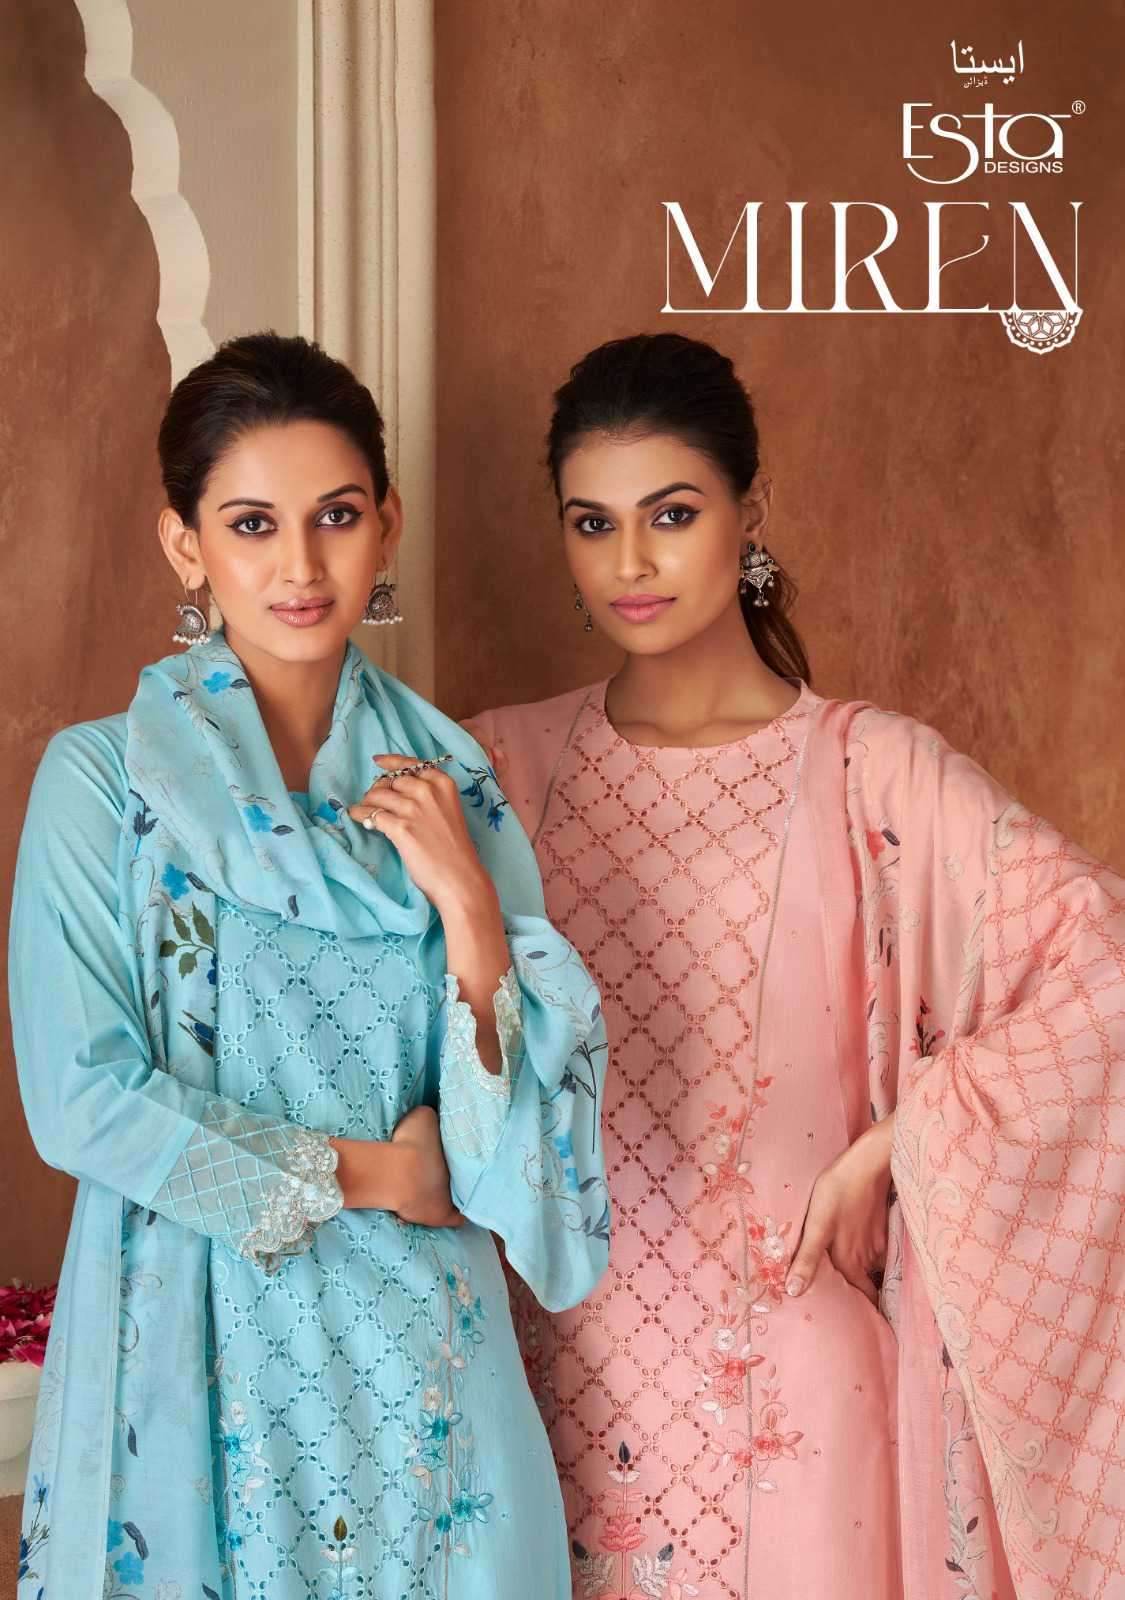 Esta Miren Fancy Cotton Ethic Wear Salwar Kameez New Collection